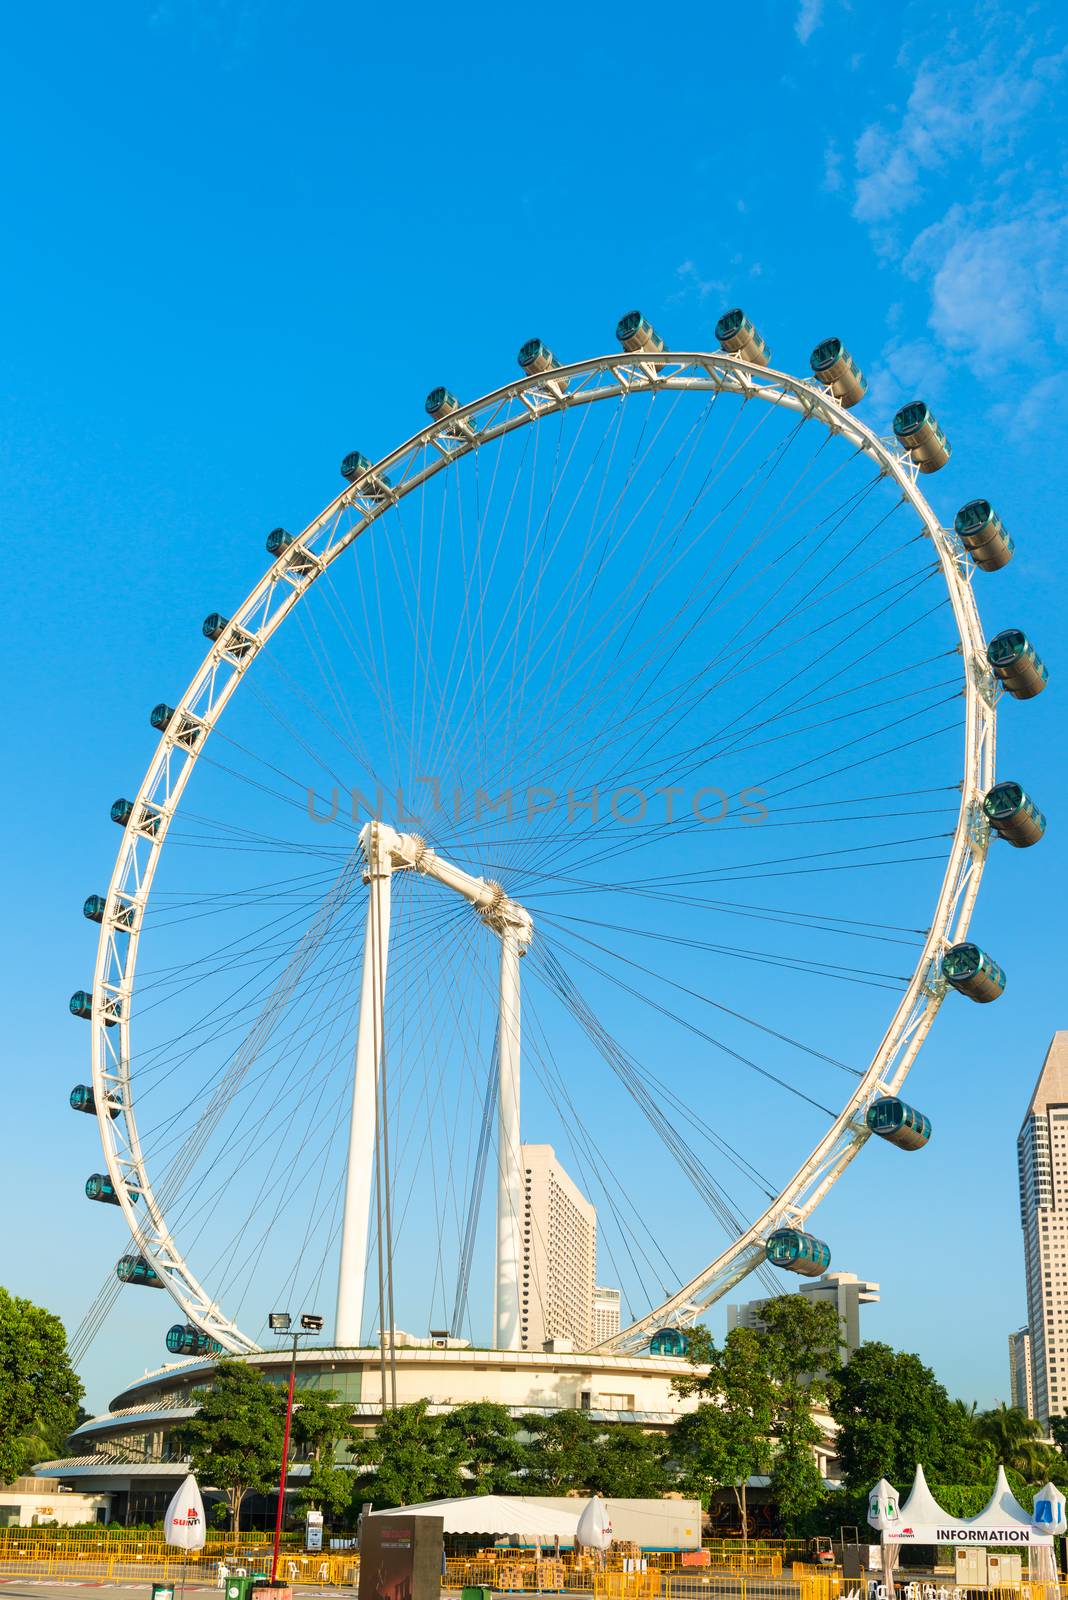 Giant Ferris wheel Singapore Flyer by iryna_rasko